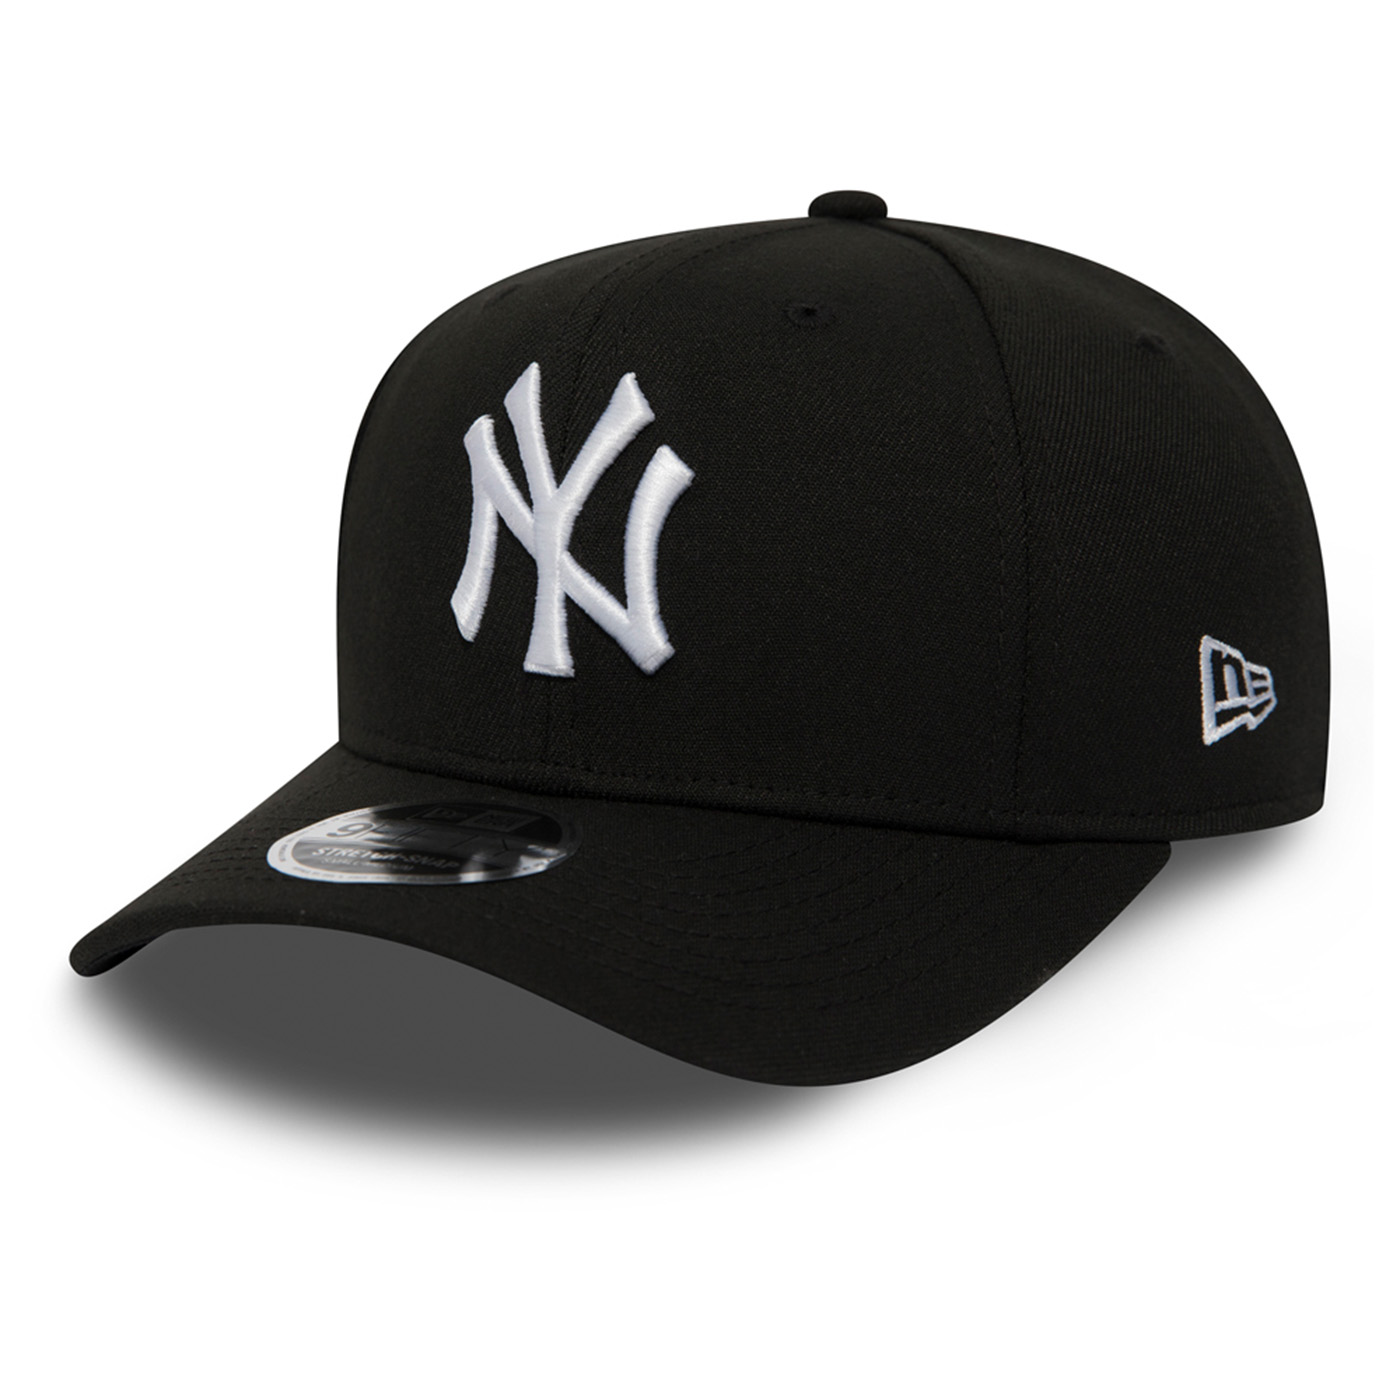 New Era 9FIFTY NY Yankees Cap Black / White